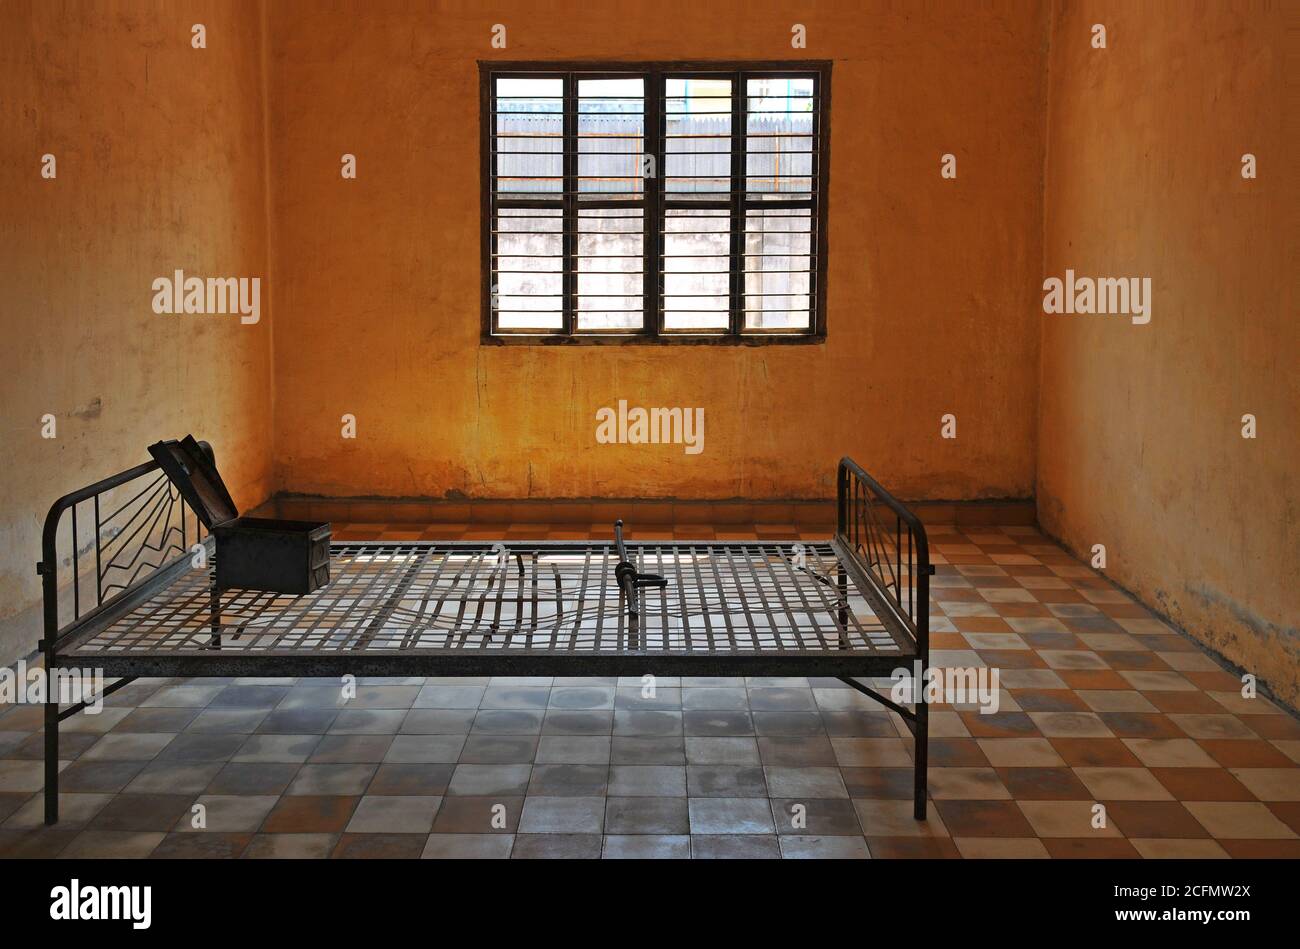 Intérieur d'une salle de torture à Tuol Sleng, également connue sous le nom de S 21 à l'époque des Khmers rouges, Phnom Penh, Cambodge. Banque D'Images